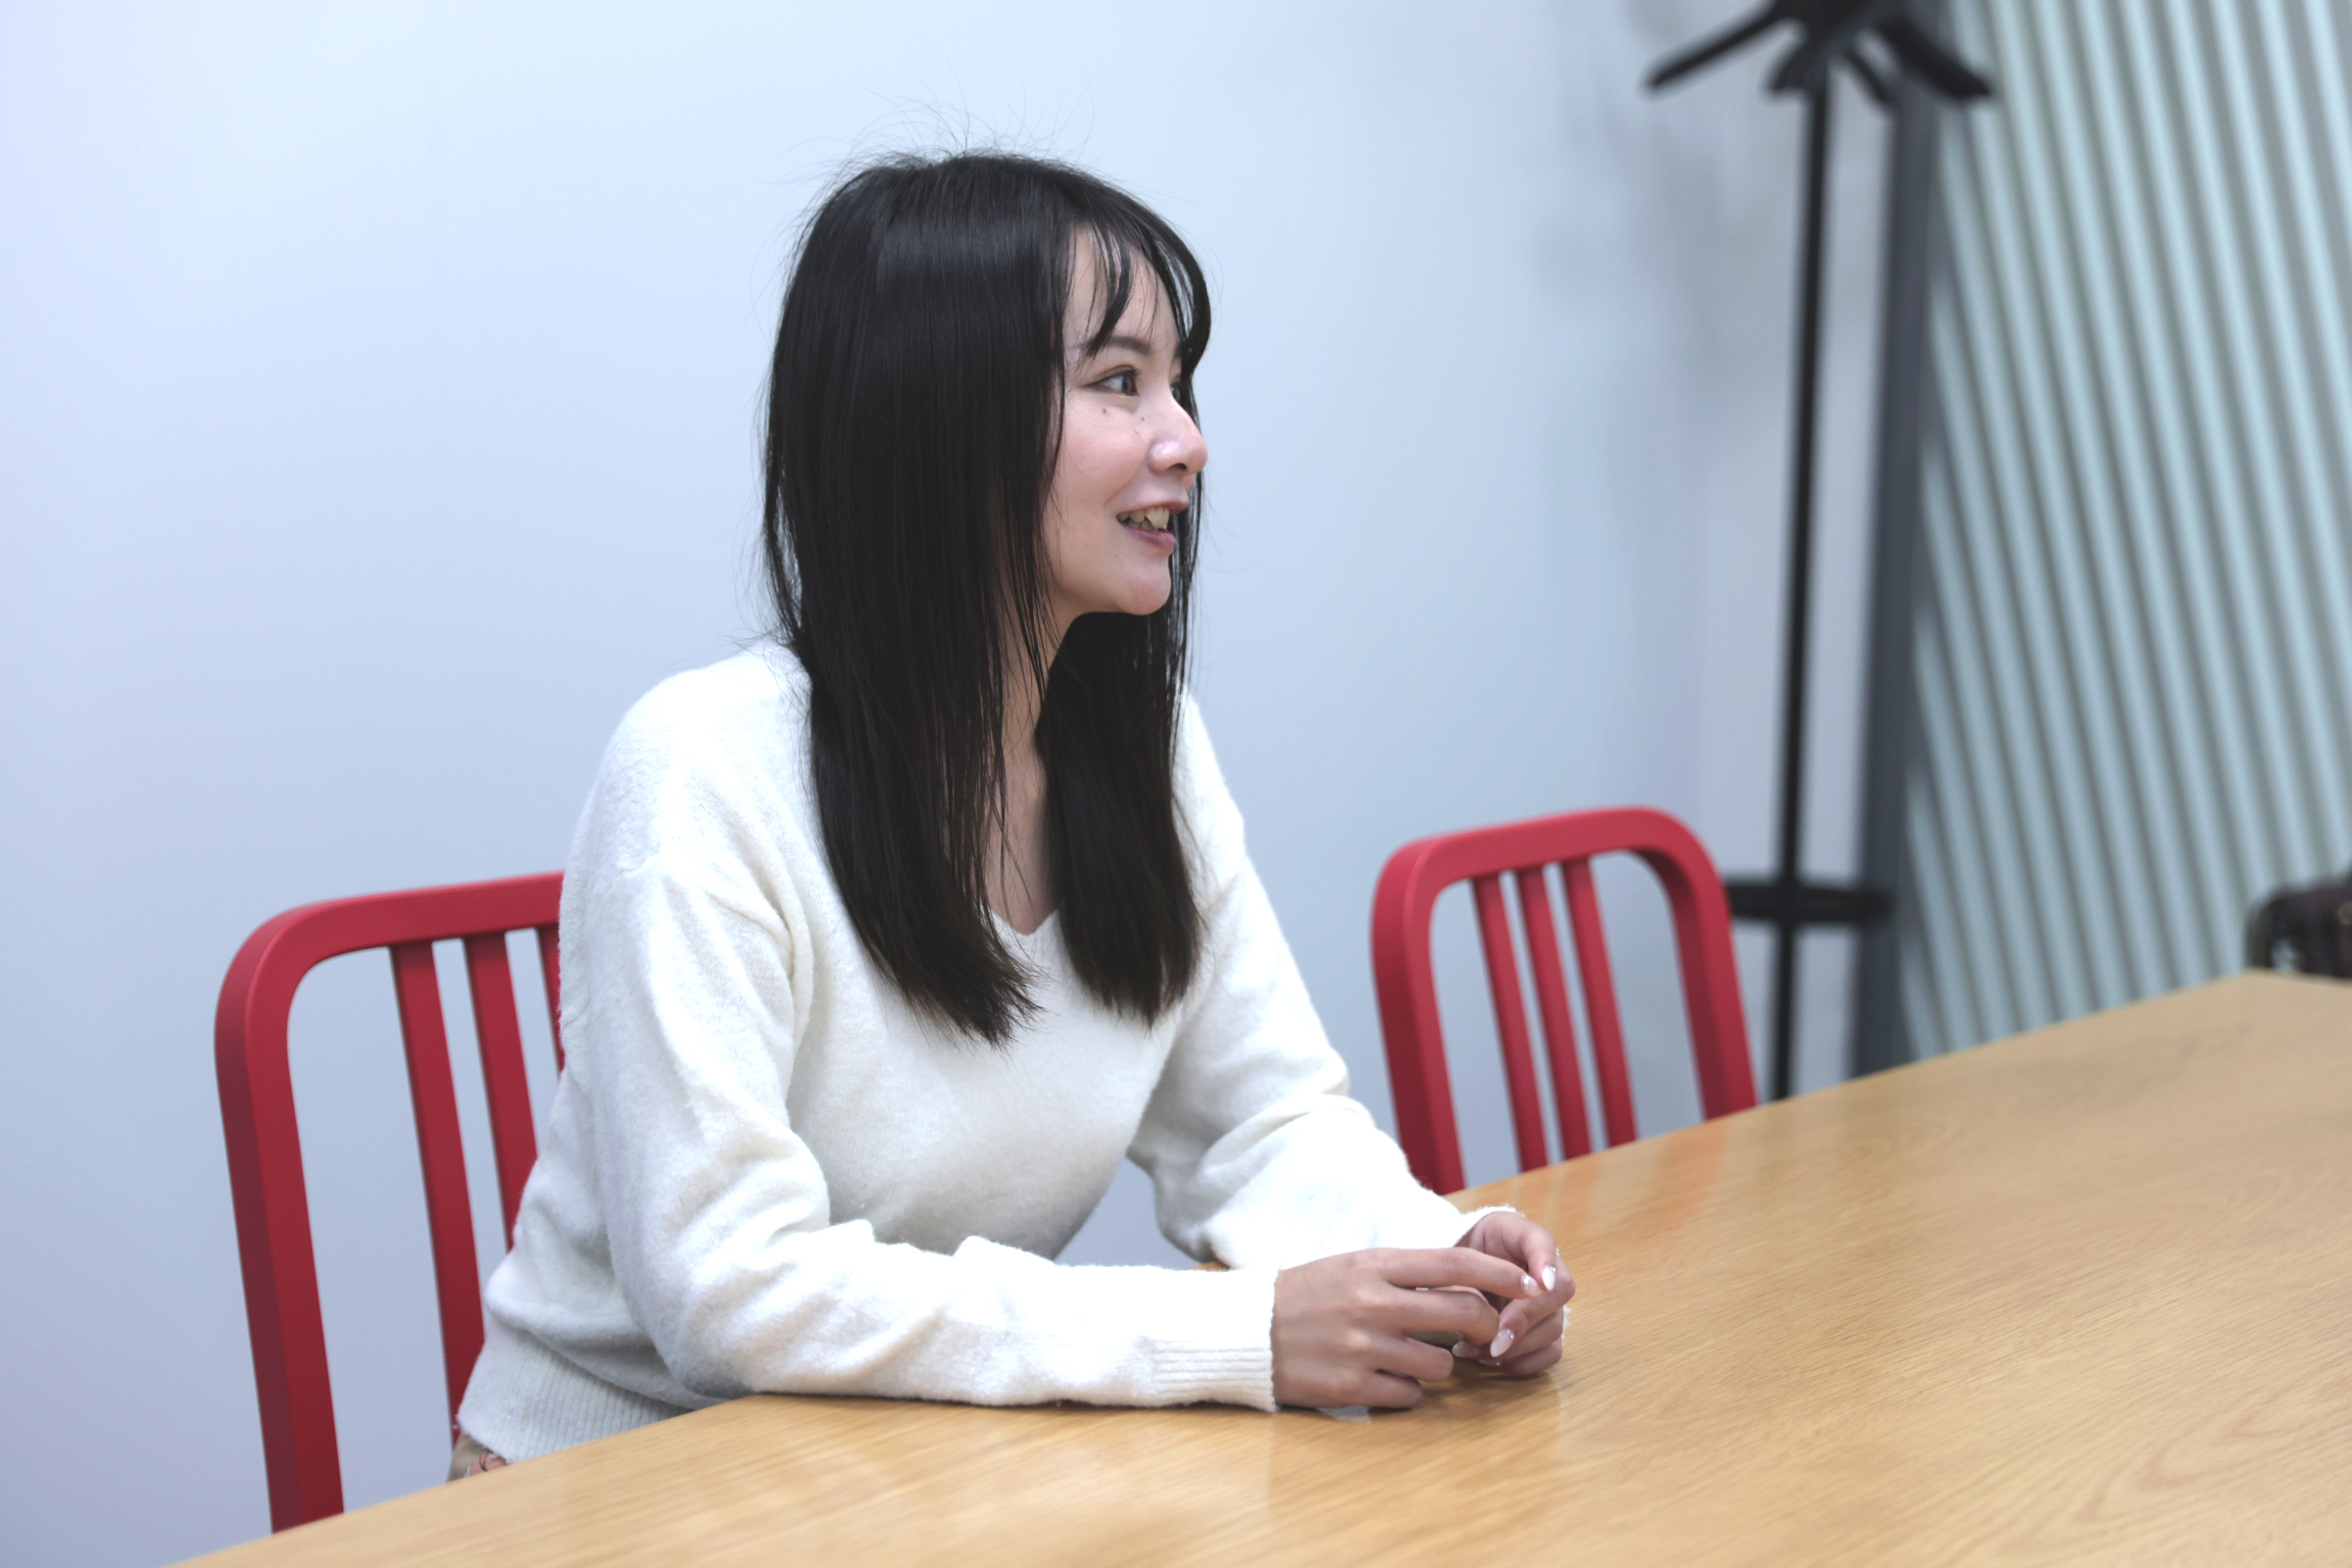 石田が椅子に座りながら、入社前の経験についてのインタビューに答えている様子の写真